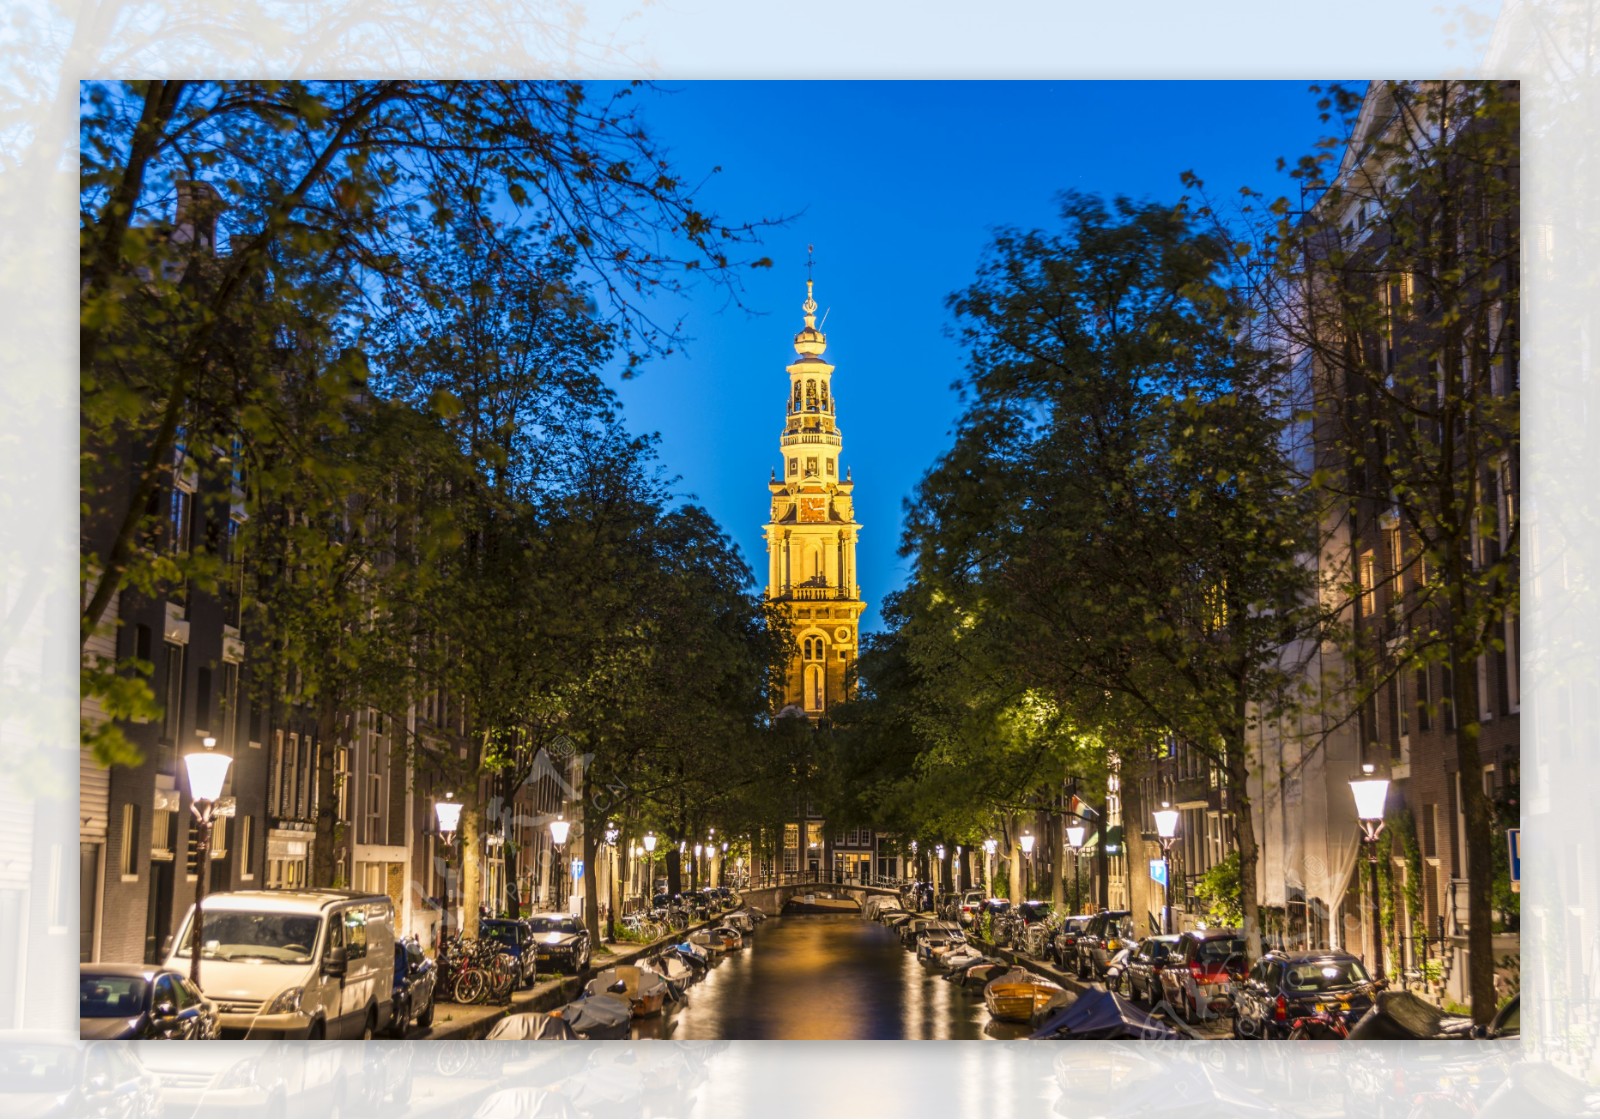 阿姆斯特丹夜景图片